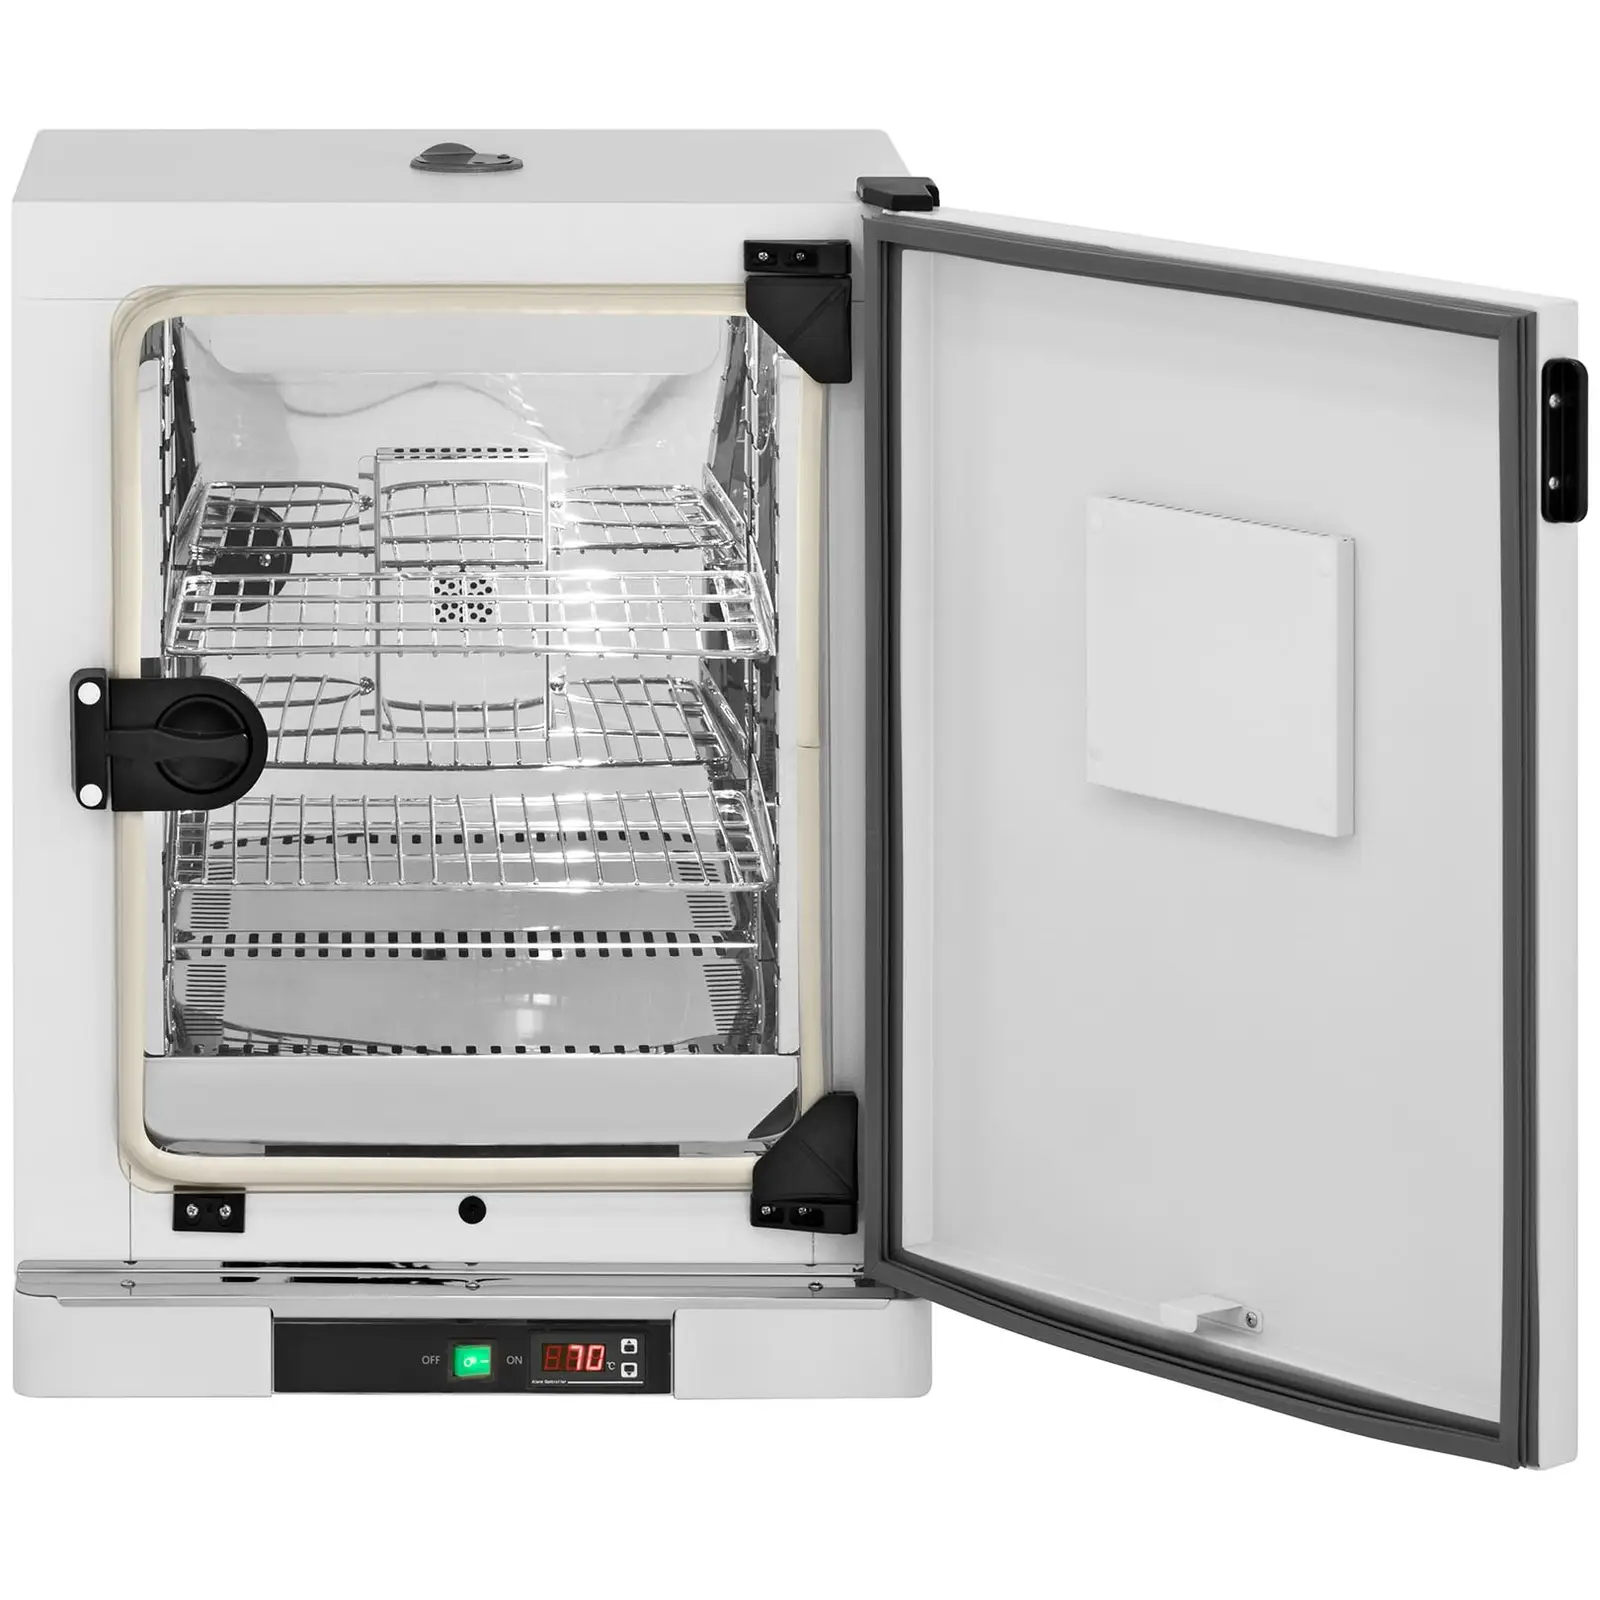 Incubadora de laboratorio - hasta 70 °C - 65 L - circulación de aire